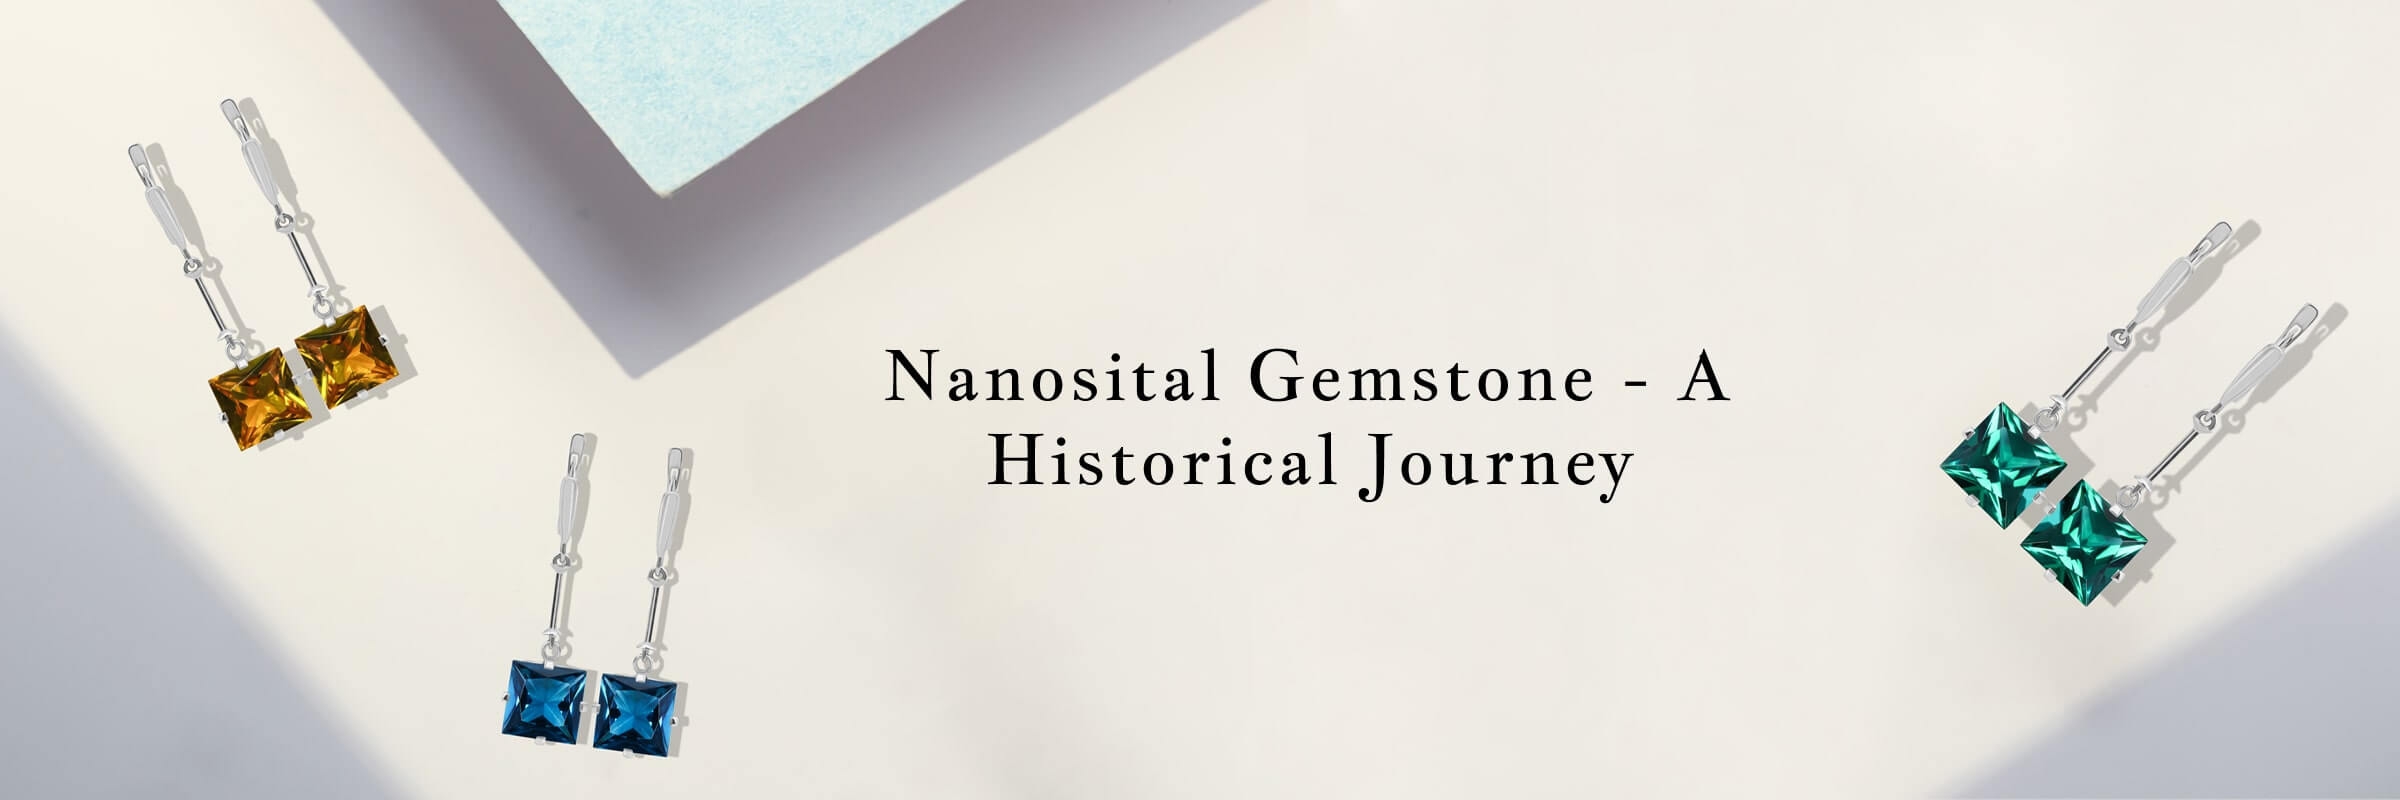 History of Nanosital Gemstone